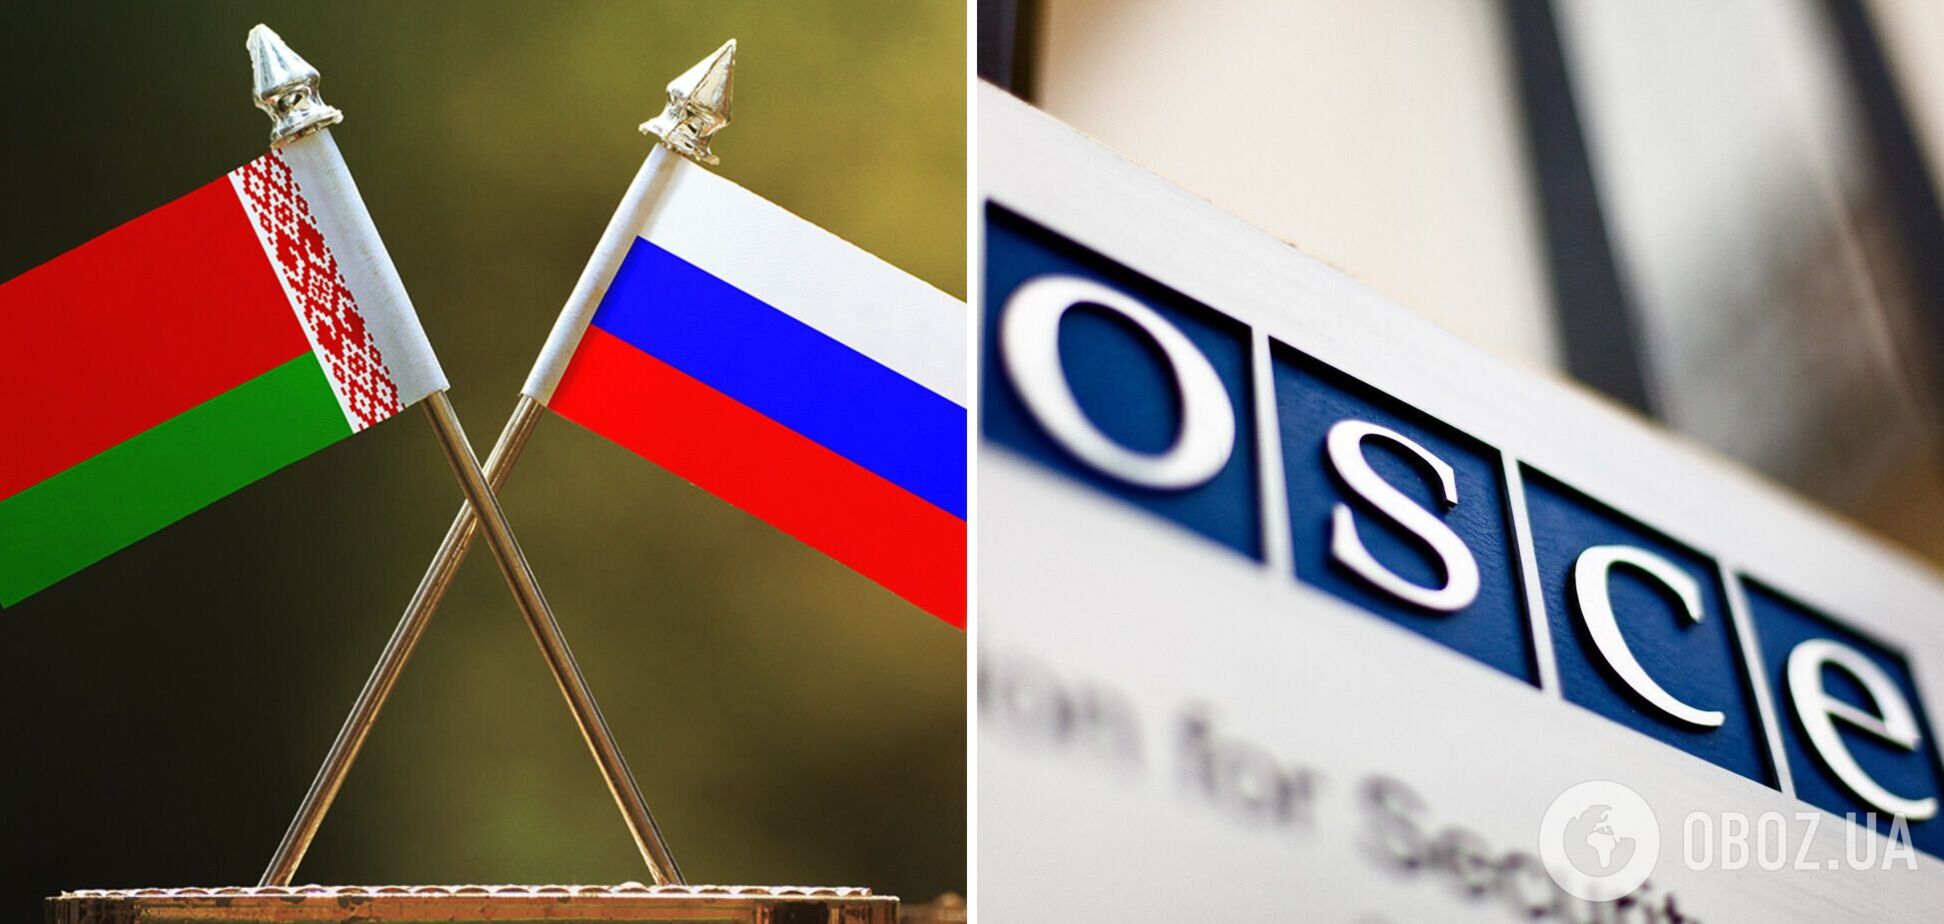 РФ и Беларусь наложили вето на избрание Эстонии главой ОБСЕ: что будет дальше